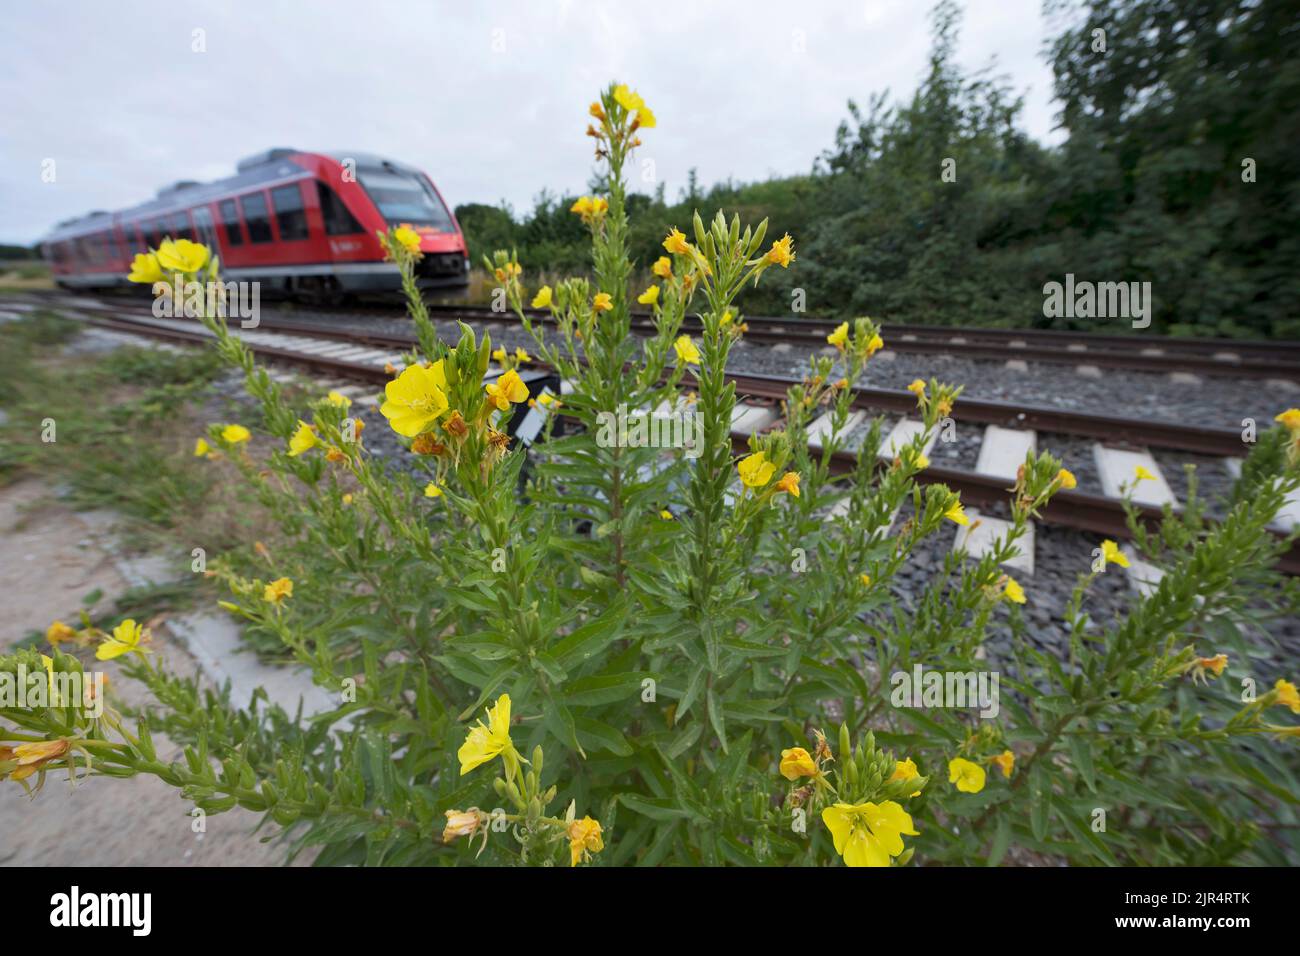 La onagra (Oenothera spec.), crece junto a una vía férrea, Alemania Foto de stock